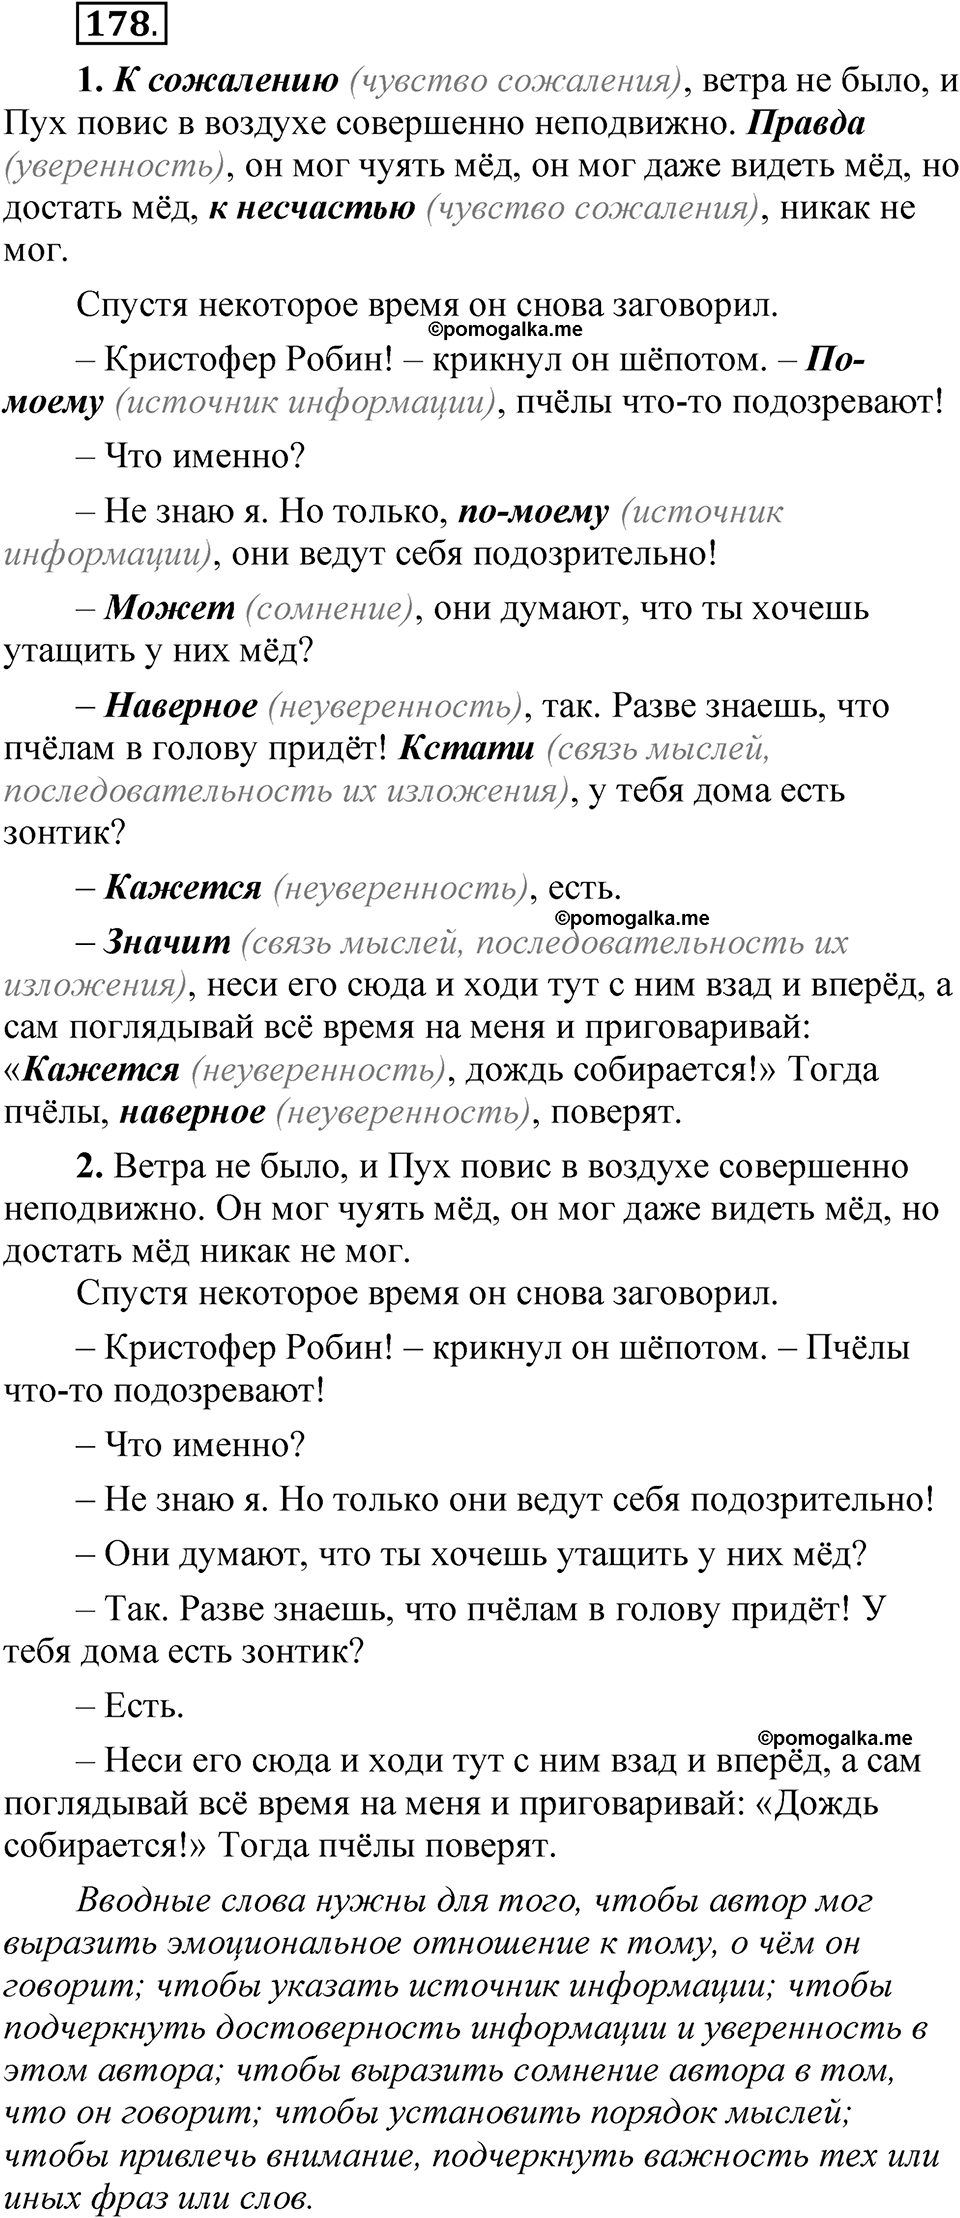 страница 138 упражнение 178 русский язык 5 класс Быстрова, Кибирева 1 часть 2021 год